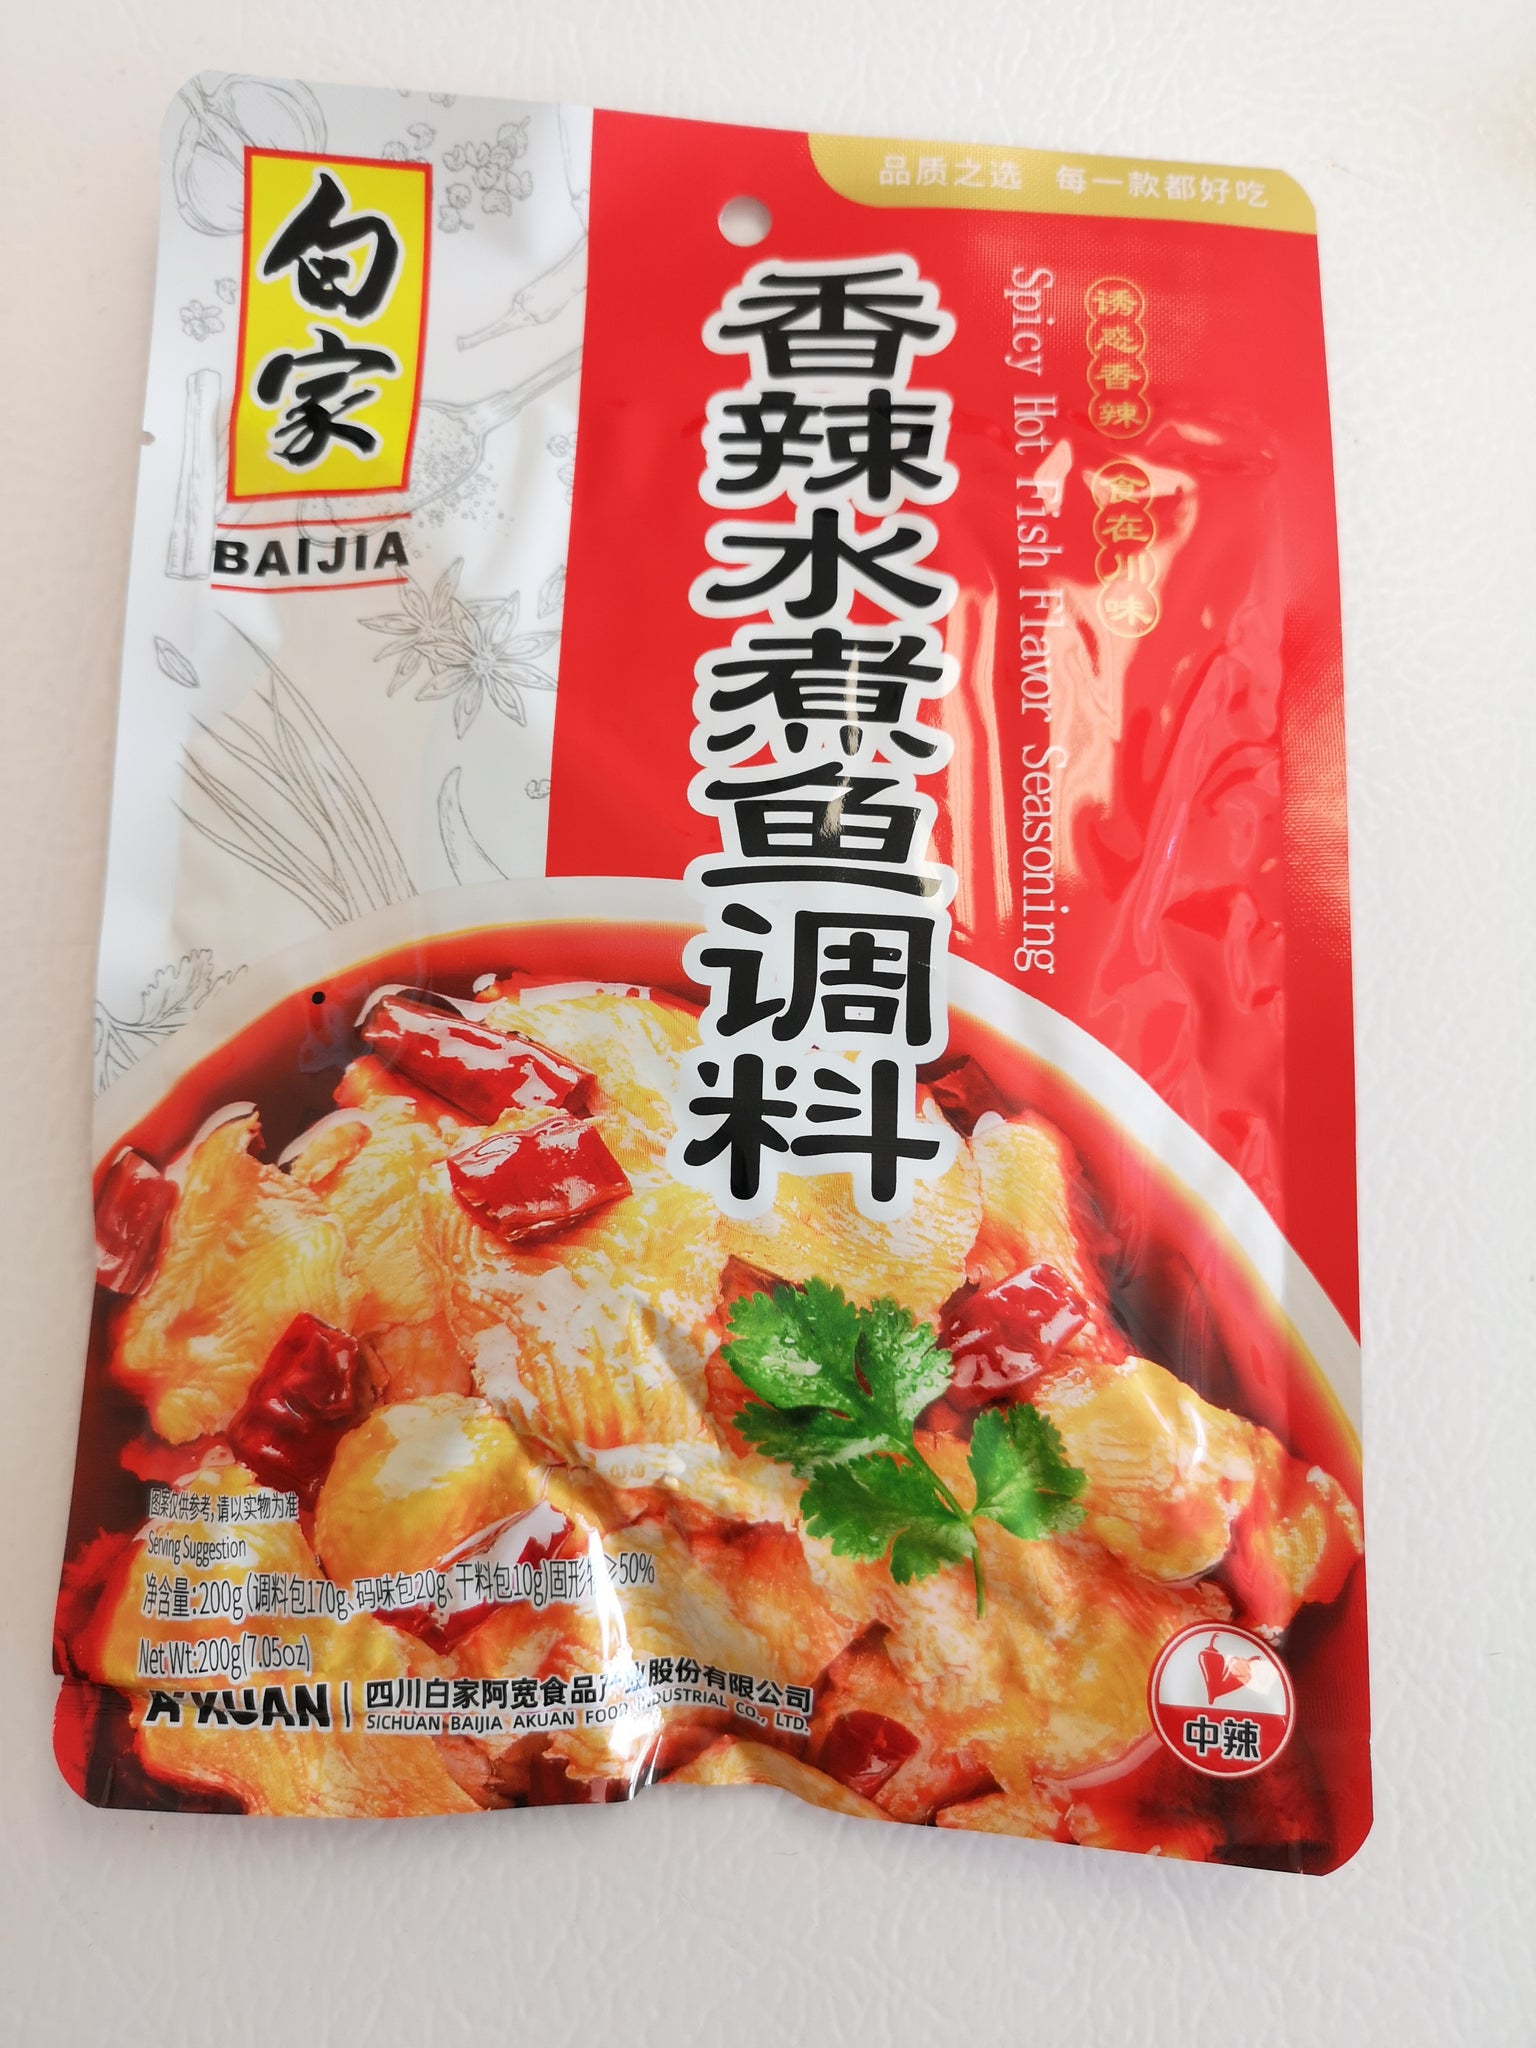 白家 香辣水煮鱼调料 Baijia Fragrant &Hot Fish Flavoured Seasoning 200g